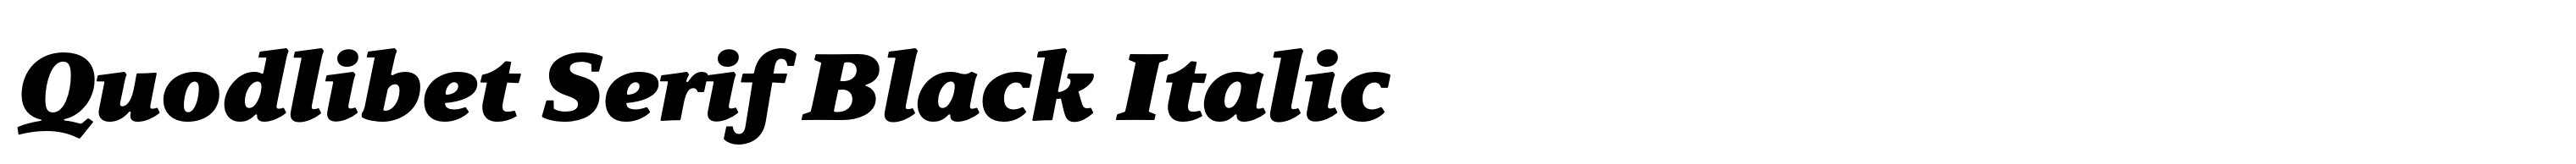 Quodlibet Serif Black Italic